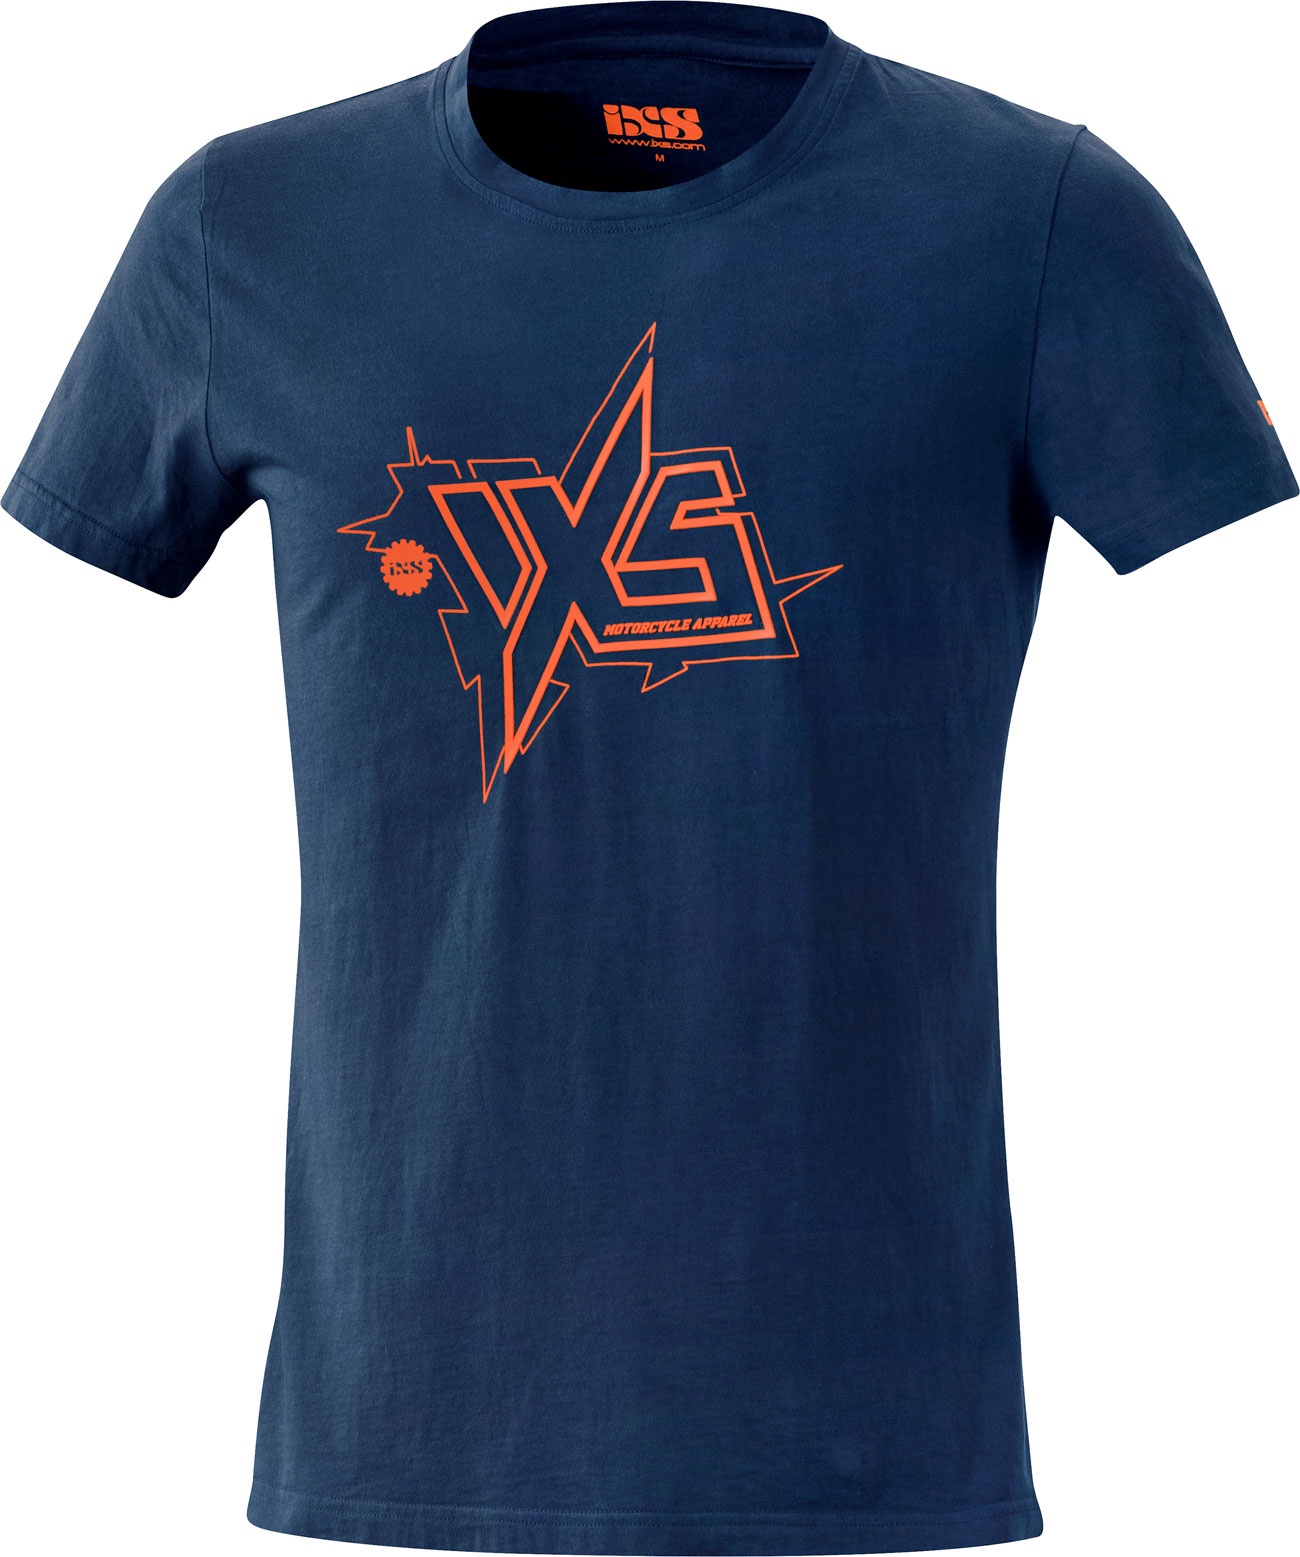 IXS Jay, t-shirt - Bleu/Orange Néon - XXL